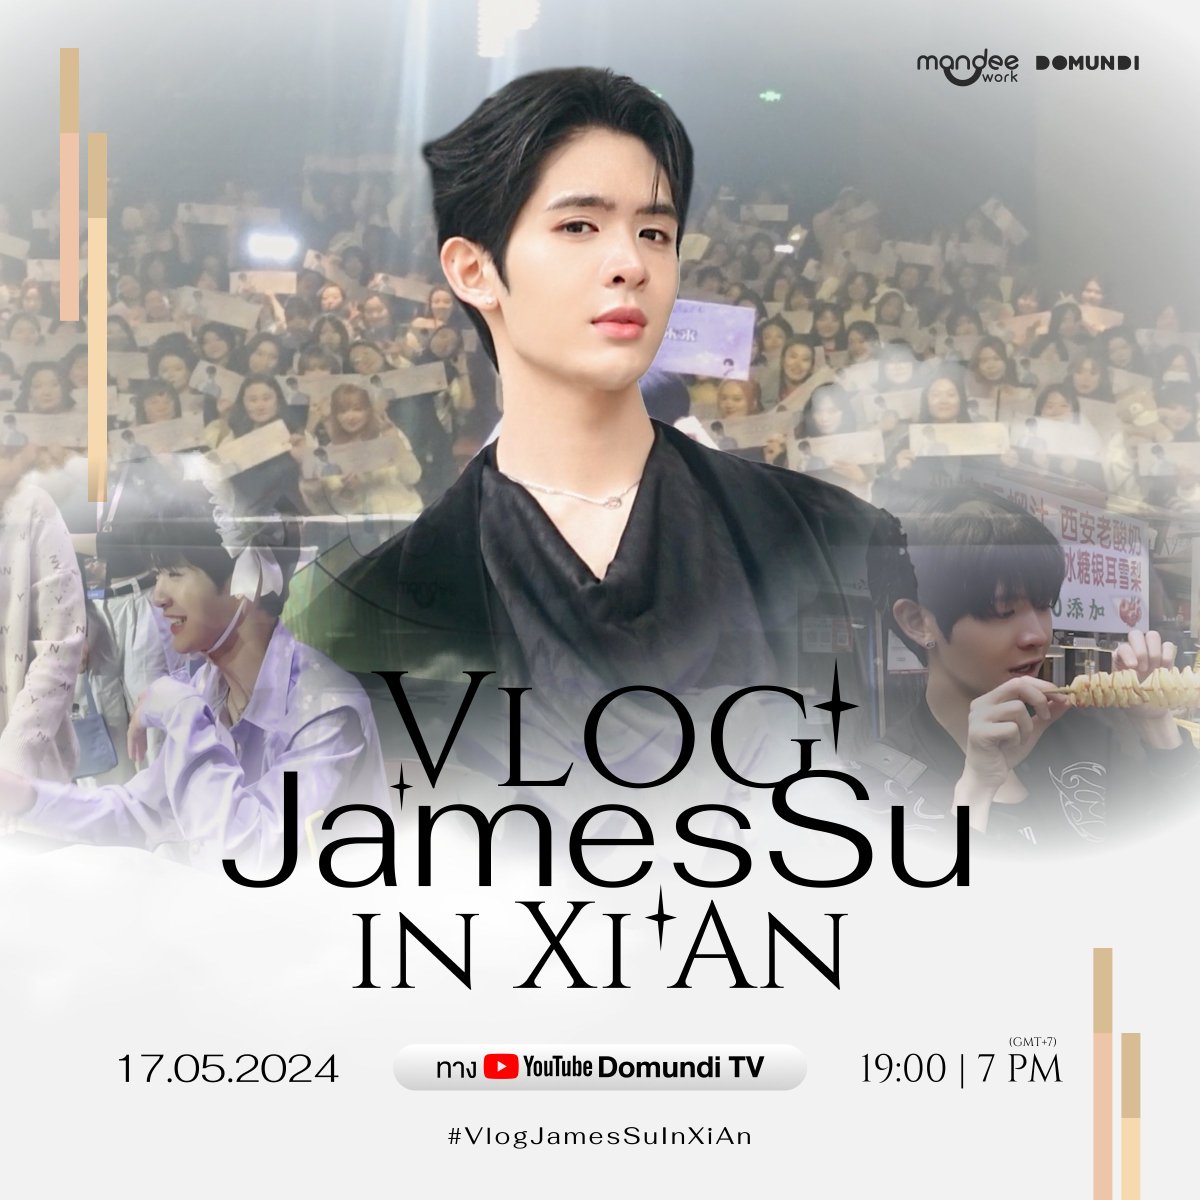 พรุ่งนี้! เตรียมตัวรับชม Vlog “JamesSu in Xi’An” พร้อมบรรยากาศงาน “James Birthday Photobook 'Romantic Future' Fan Sign” 🎥✨

🗓️ : 17.05.2024
⏰ : 19.00 น. I 7 PM (GMT+7)
📍 : YouTube : DOMUNDI TV
#️⃣ : #.VlogJamesSuInXiAn 

@Jamessu_w 
#JamesSu
#domunditv